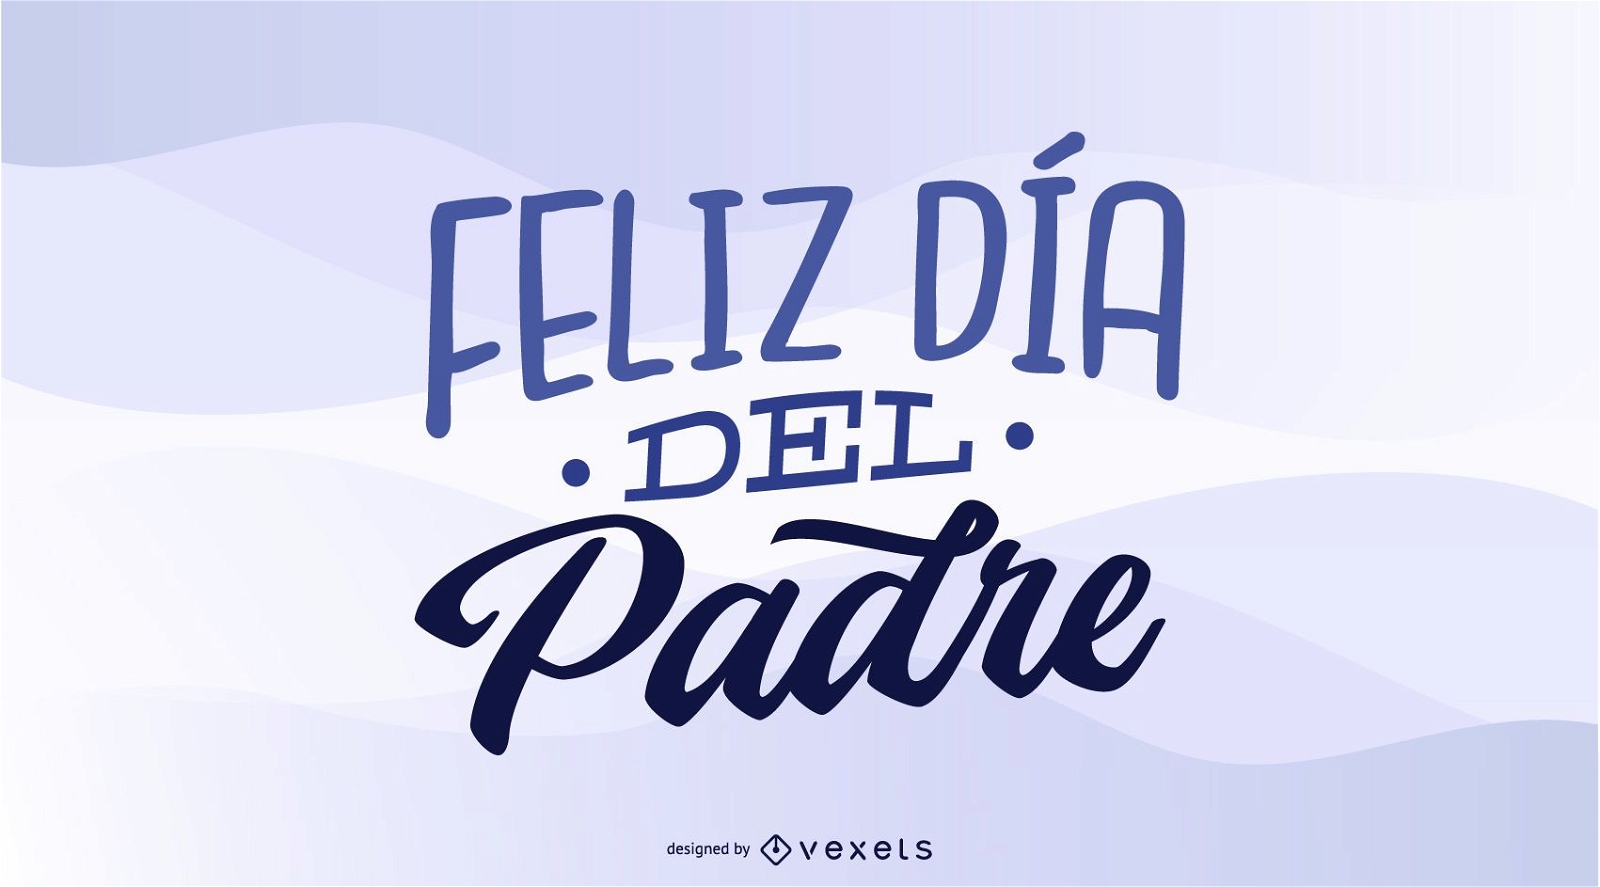 Diseño español feliz día del padre